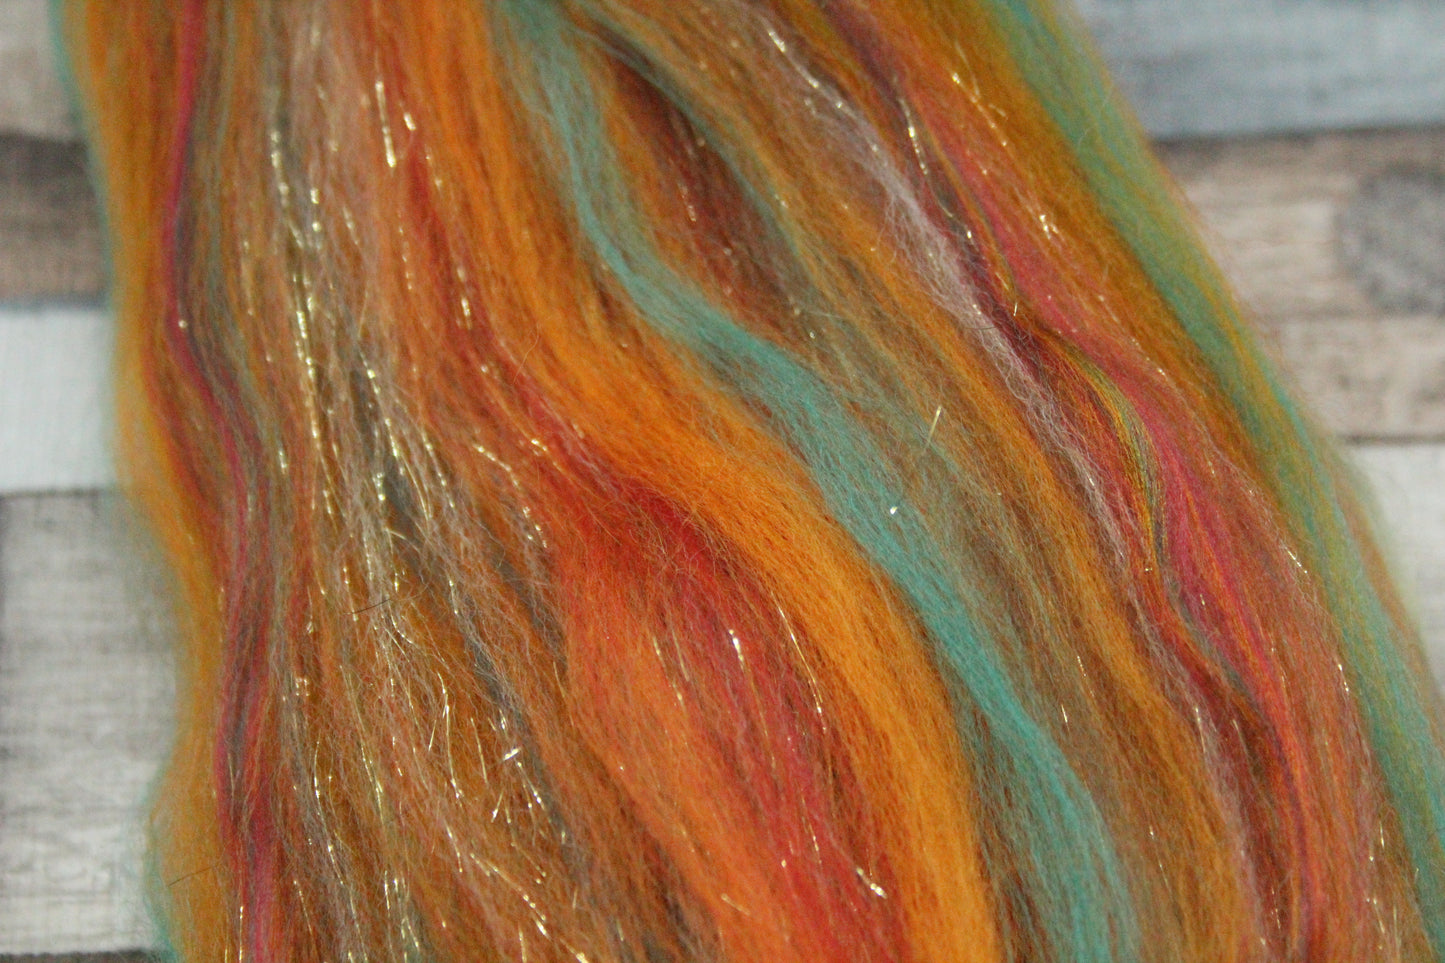 Merino Wool Blend - Orange Brown Green Red - 27 grams / 0.9 oz  - Fibre for felting, weaving or spinning